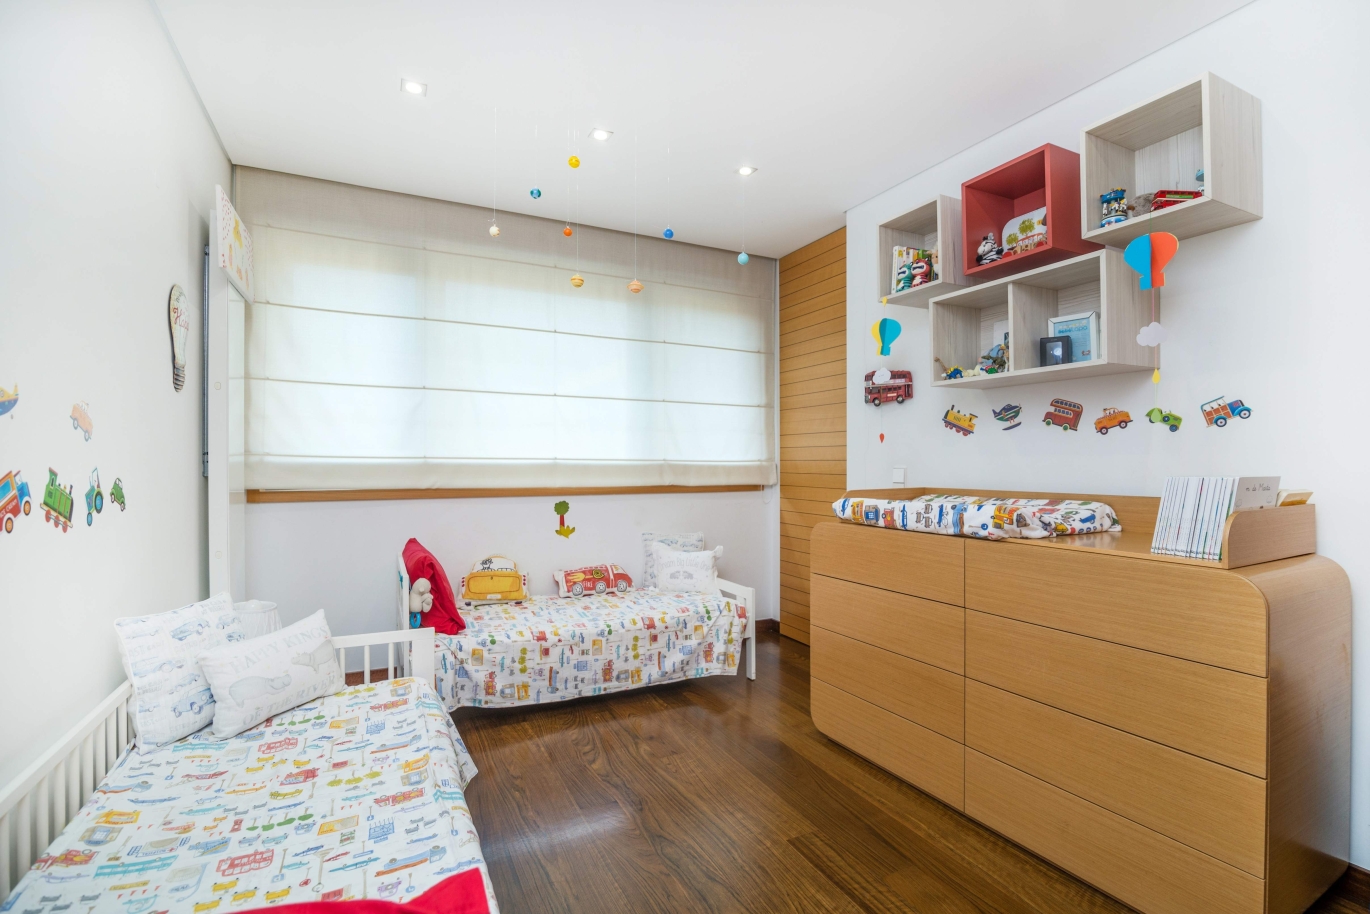 Venta apartamento en condominio privado con vistas río, Porto,Portugal_121035